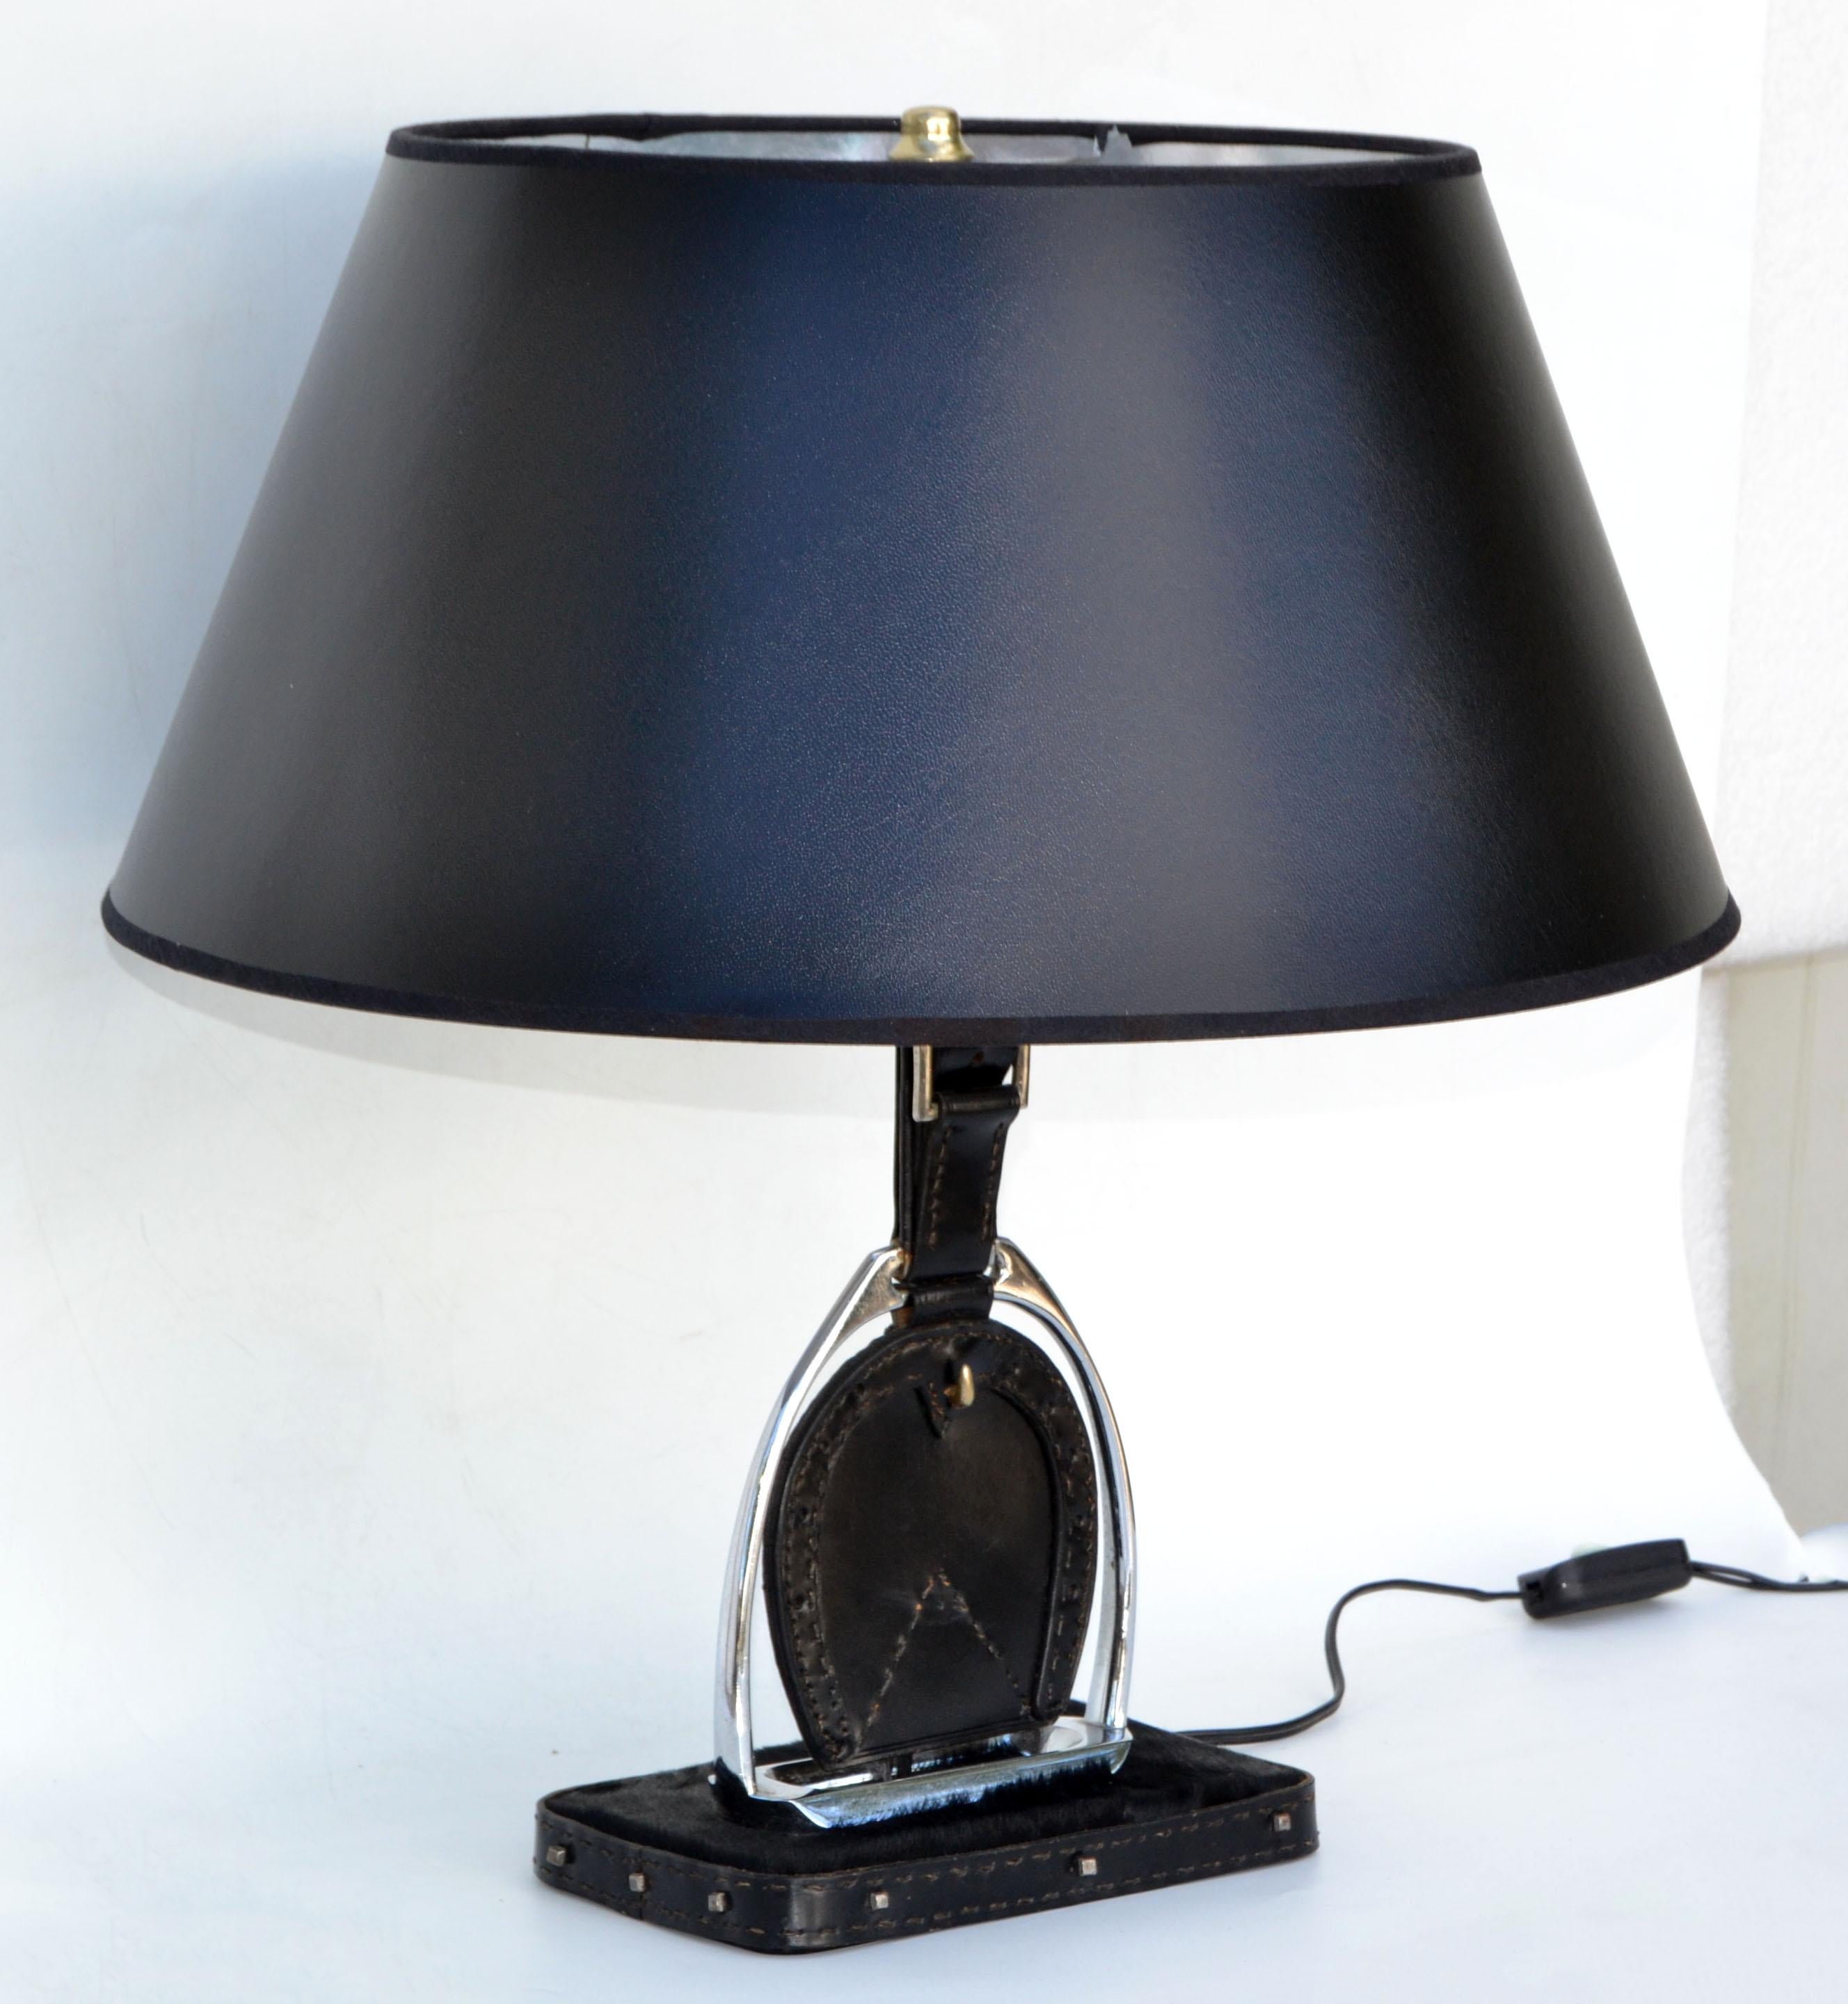 Französische Jacques Adnet Art Deco Tischlampe aus Pferdehaar, Nickel und Leder mit Sattelnähten aus den 1950er Jahren.
In perfektem Zustand US Umverdrahtung und nimmt 1 Glühbirne max. 75 Watt, oder LED-Glühbirne.
Schirm nicht enthalten.
Maße: